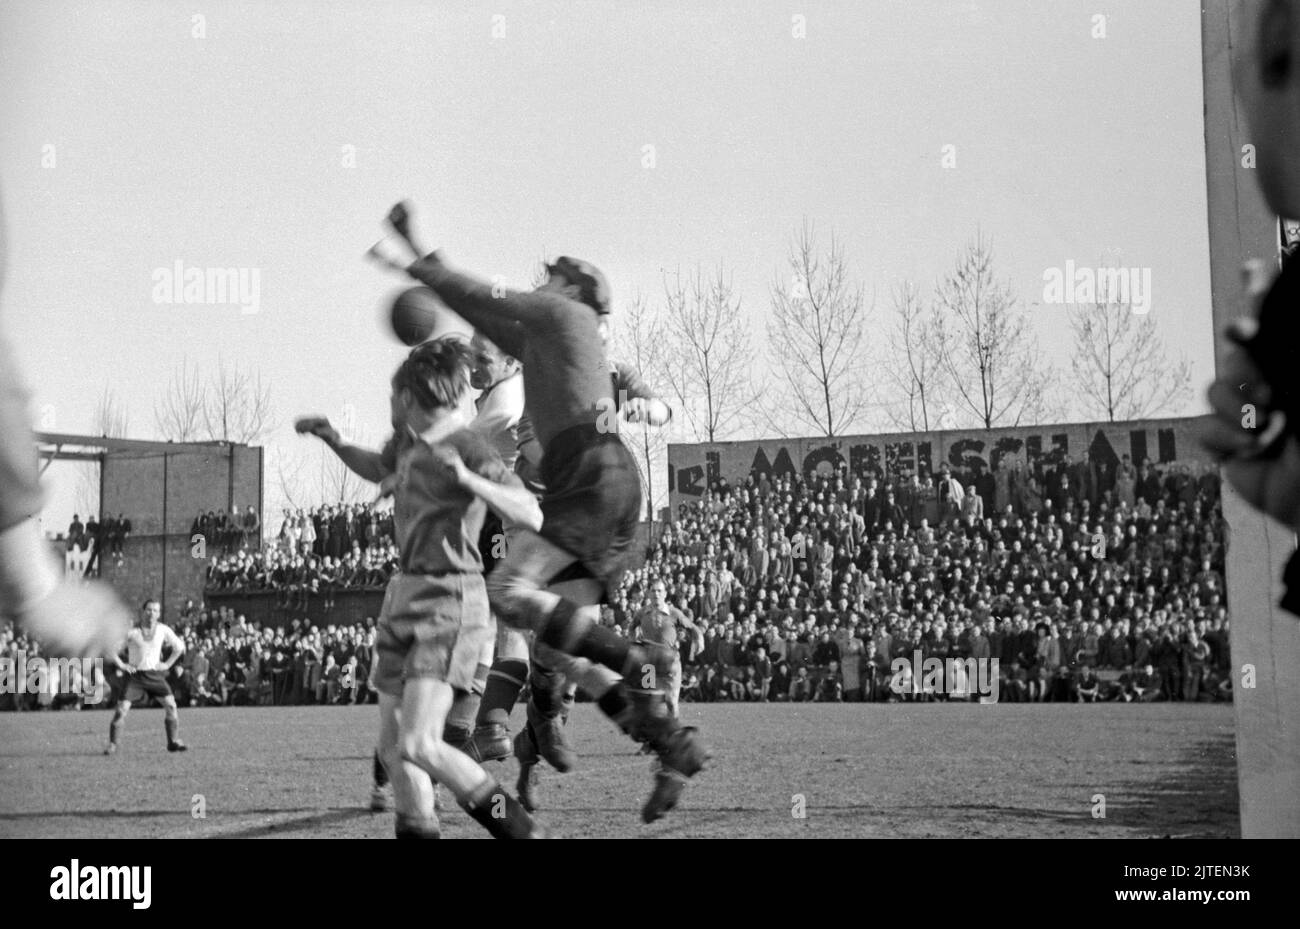 Erstes Spiel nach der Neugründung: Spielszene aus dem Spiel Hertha BSC - BSC Kickers, Berlin, Deutschland 1947. Stock Photo